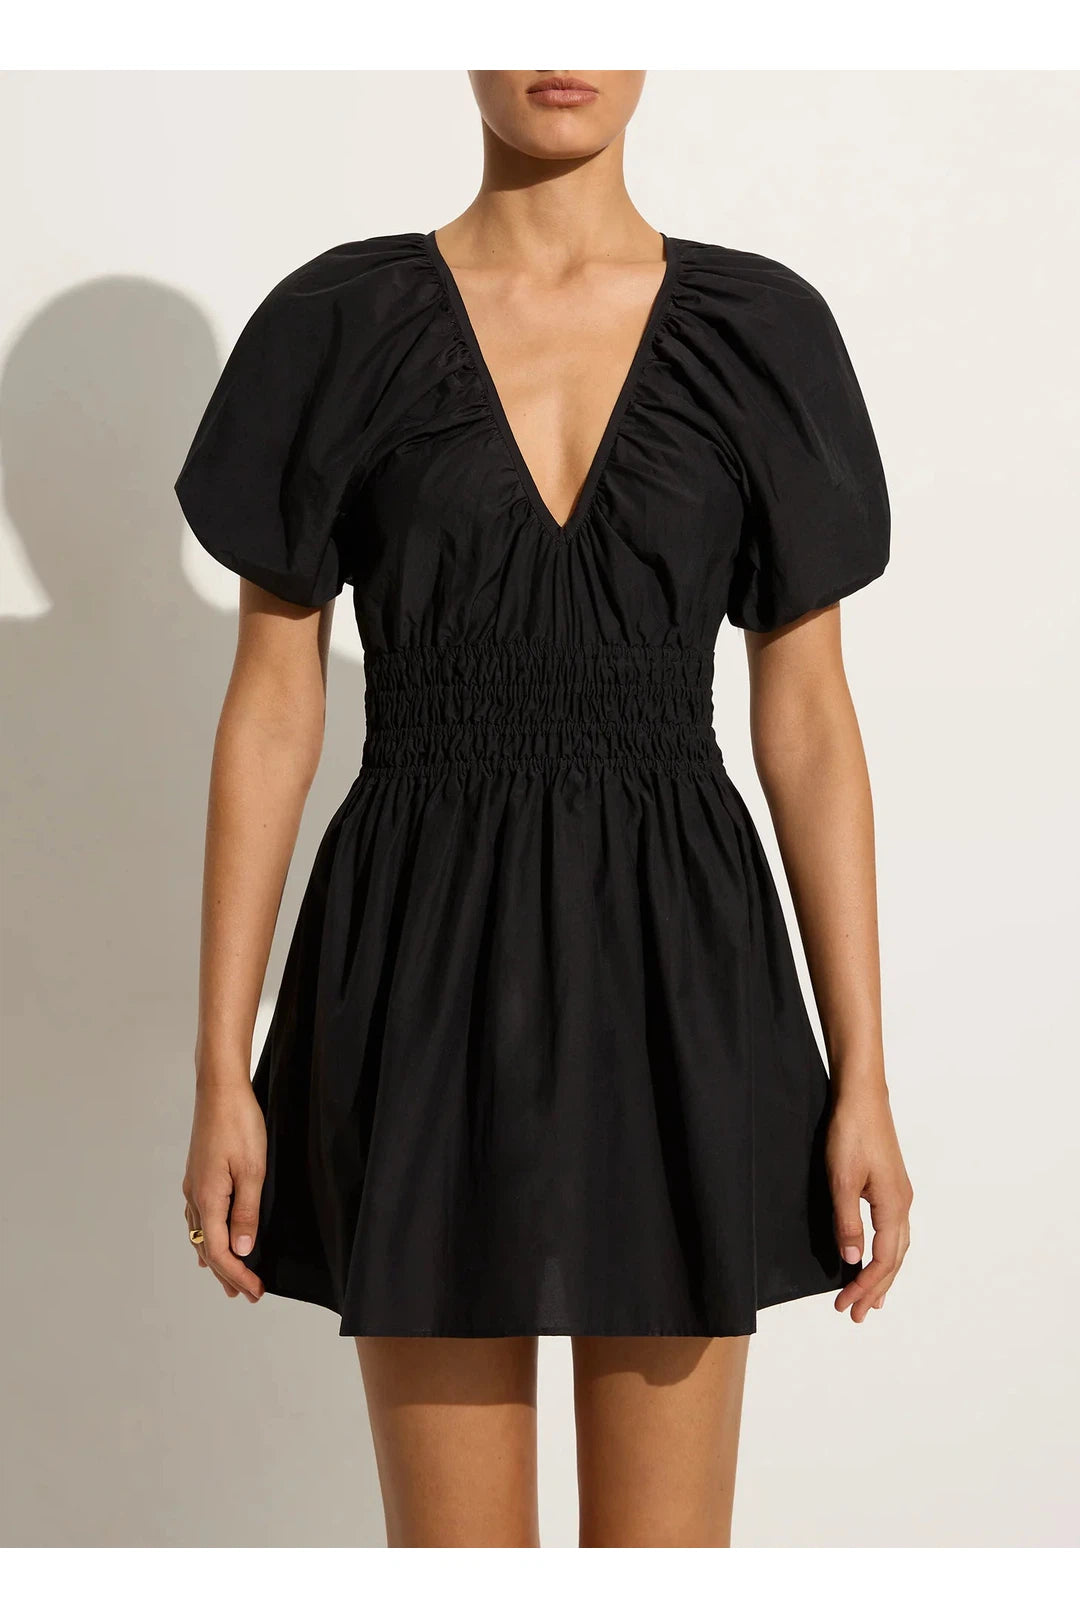 Salone mini dress, black